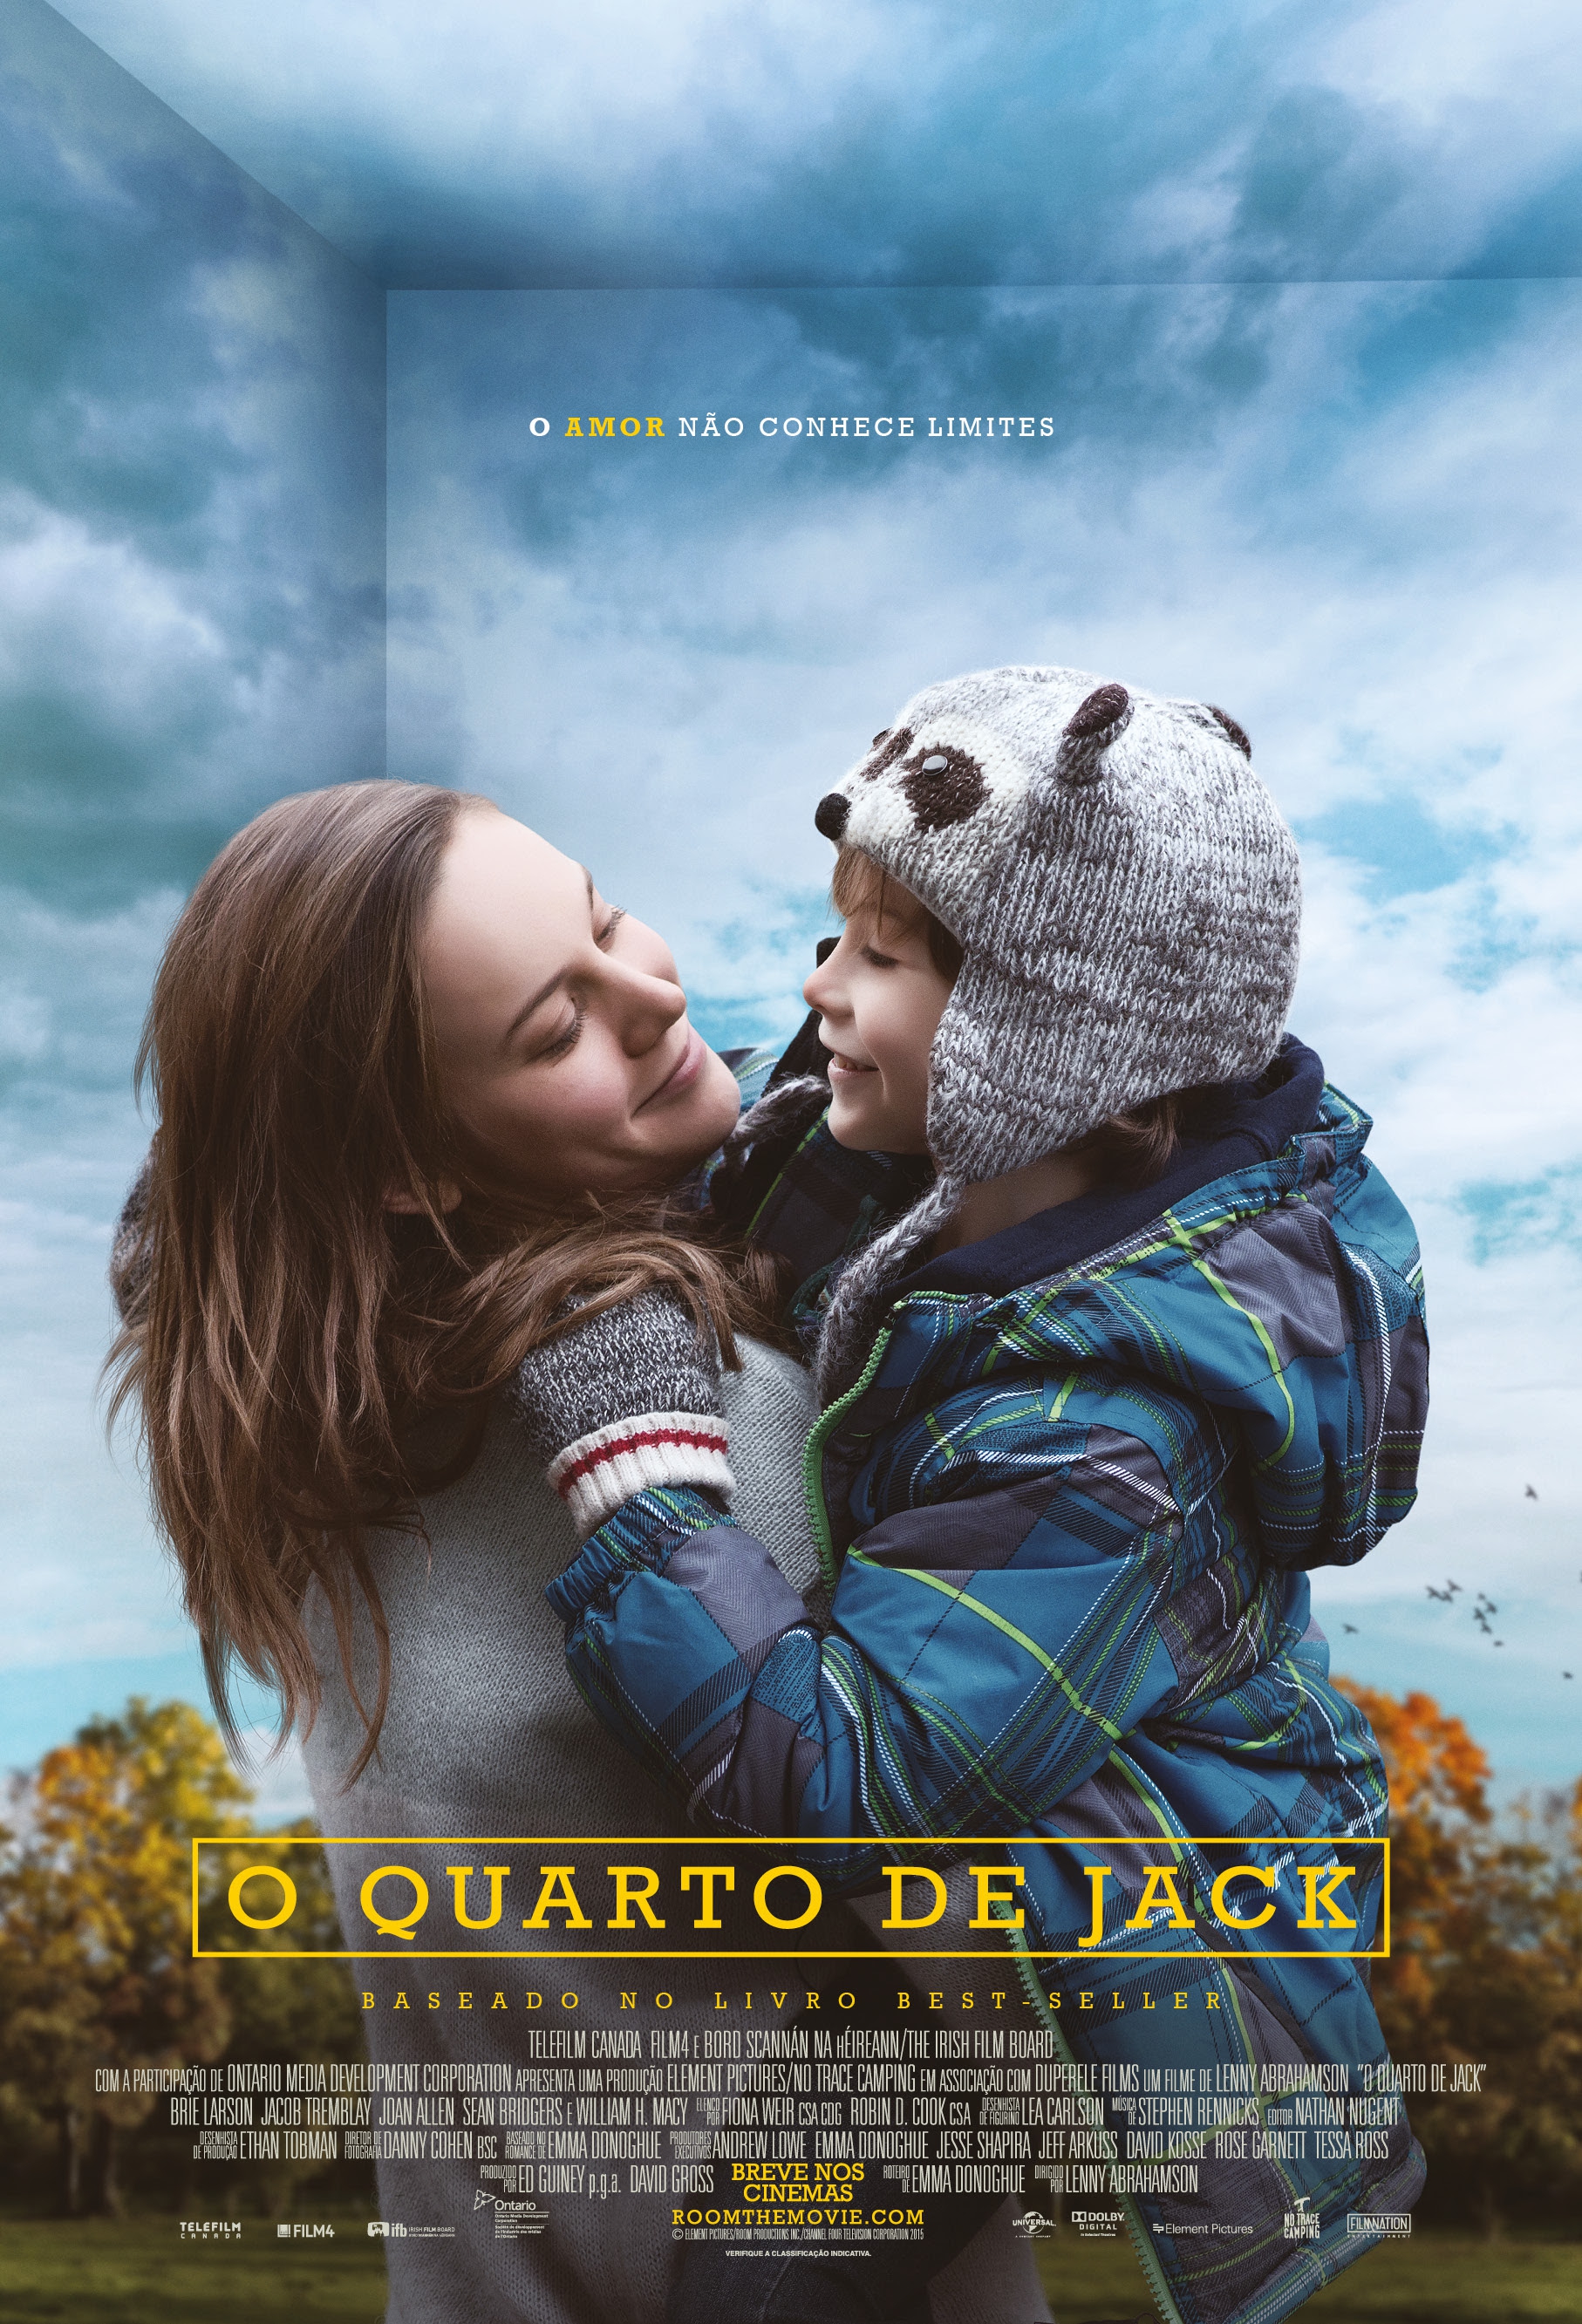  O Quarto de Jack  (2015) Poster 